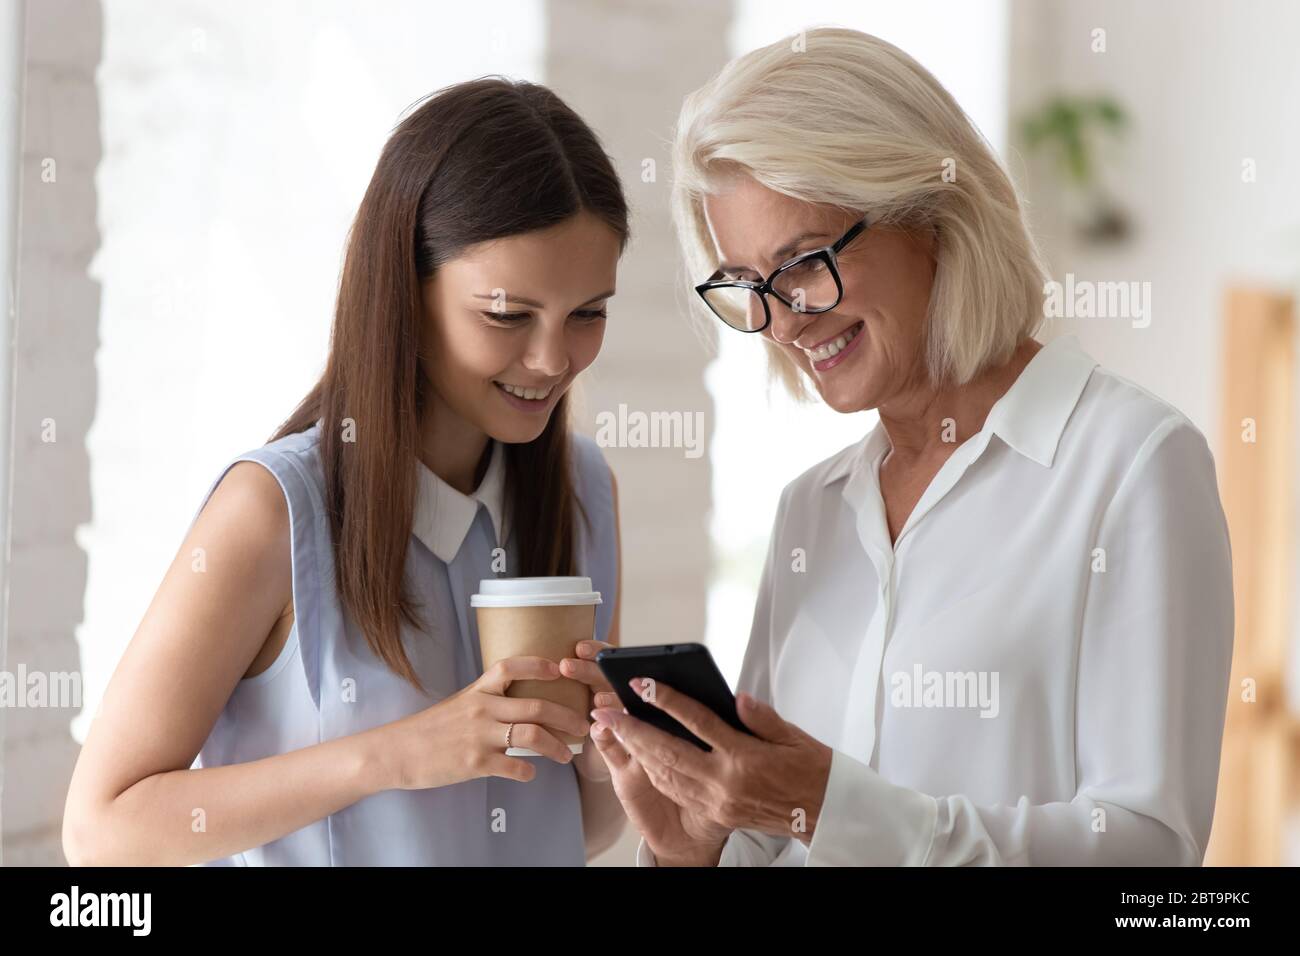 Las mujeres sonrientes hojean el smartphone en la cafetería de la oficina Foto de stock